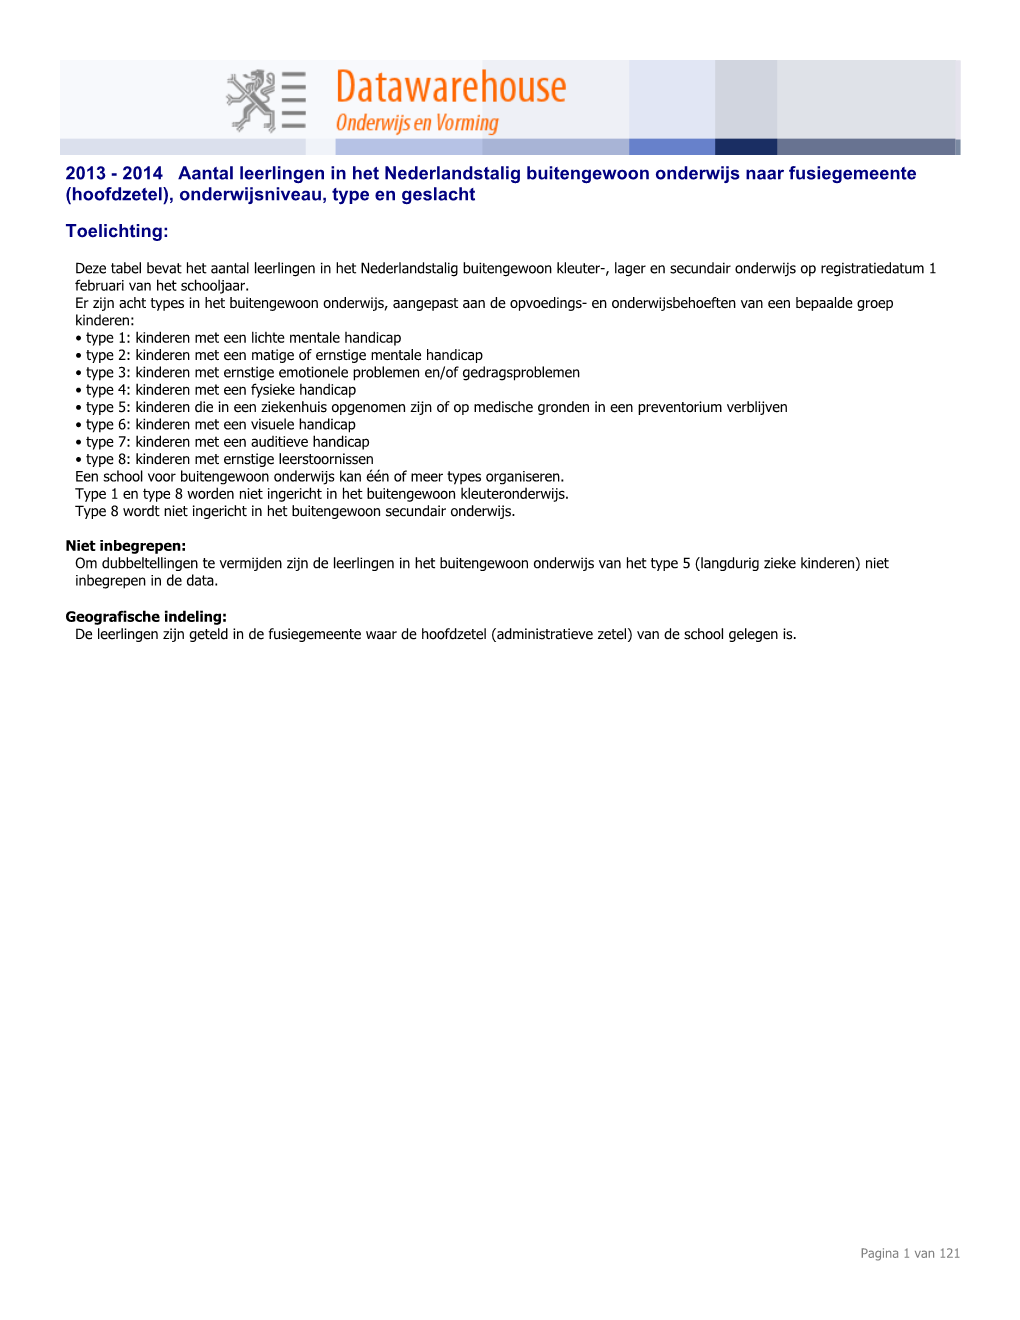 2014 Aantal Leerlingen in Het Nederlandstalig Buitengewoon Onderwijs Naar Fusiegemeente (Hoofdzetel), Onderwijsniveau, Type En Geslacht